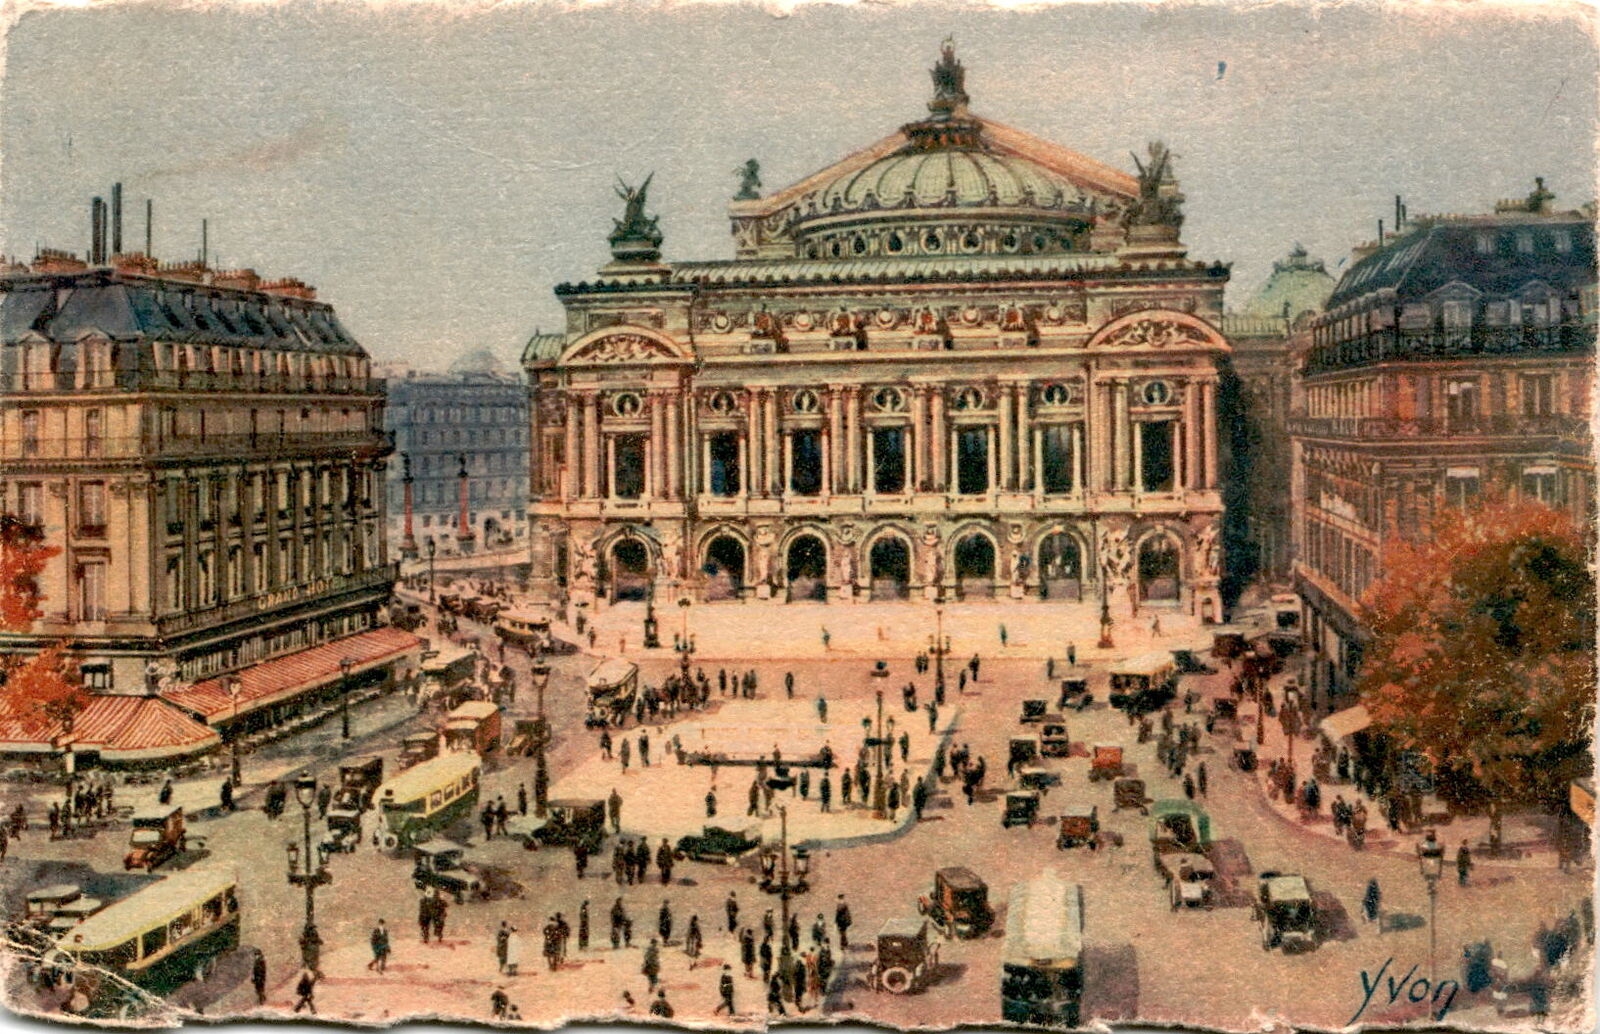 Paris, Yvon Série, Marguvate, Place de l'Opéra. Postcard